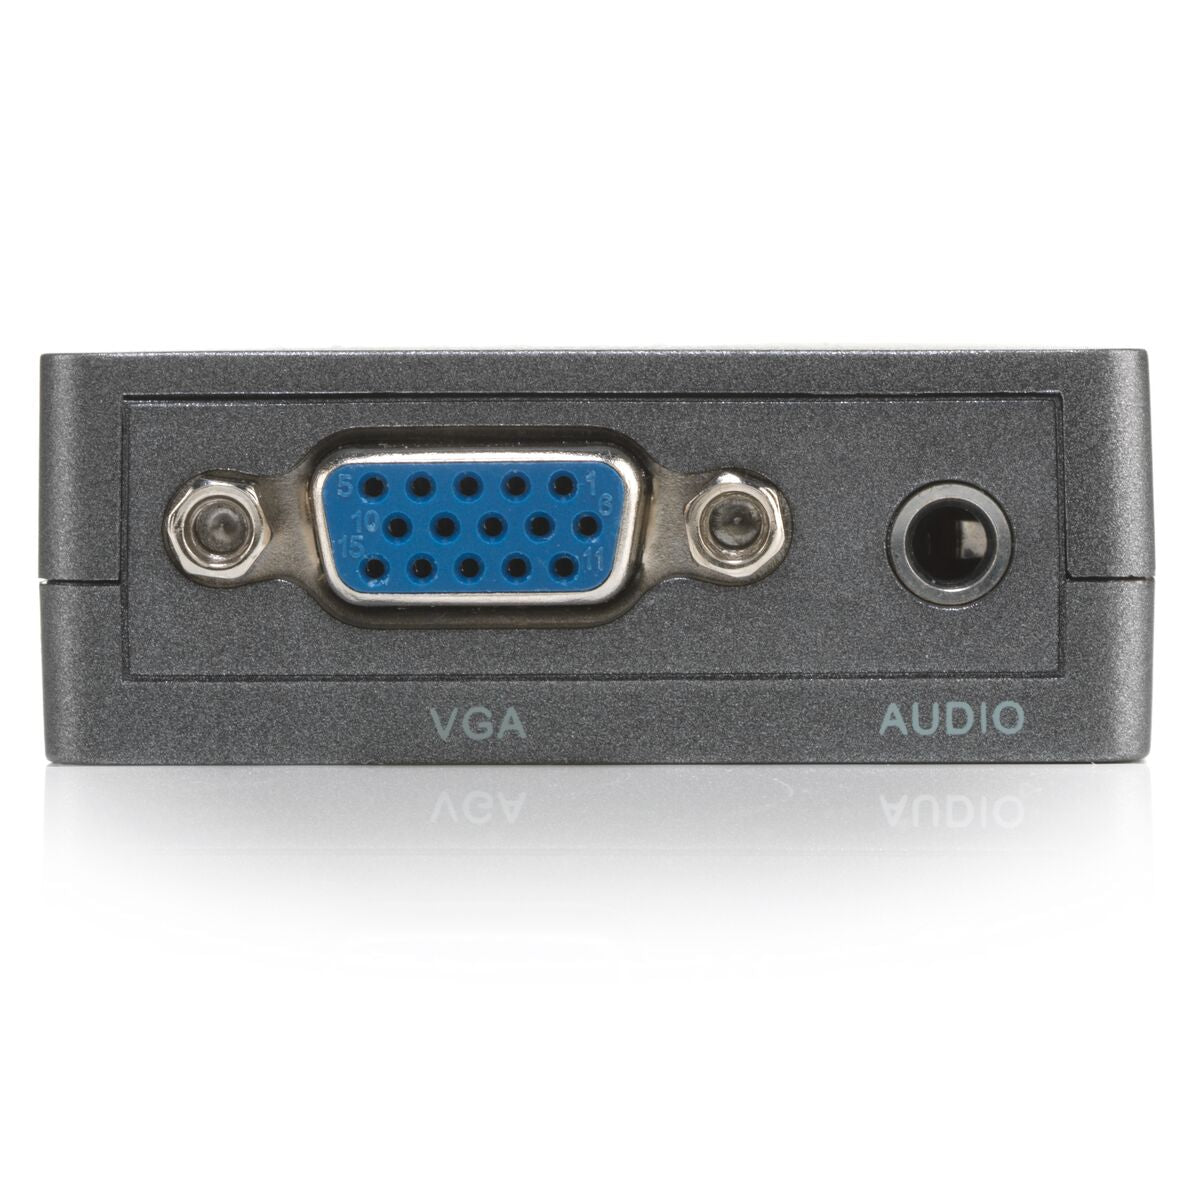 Connect HV15 - Adaptateur HDMI VGA